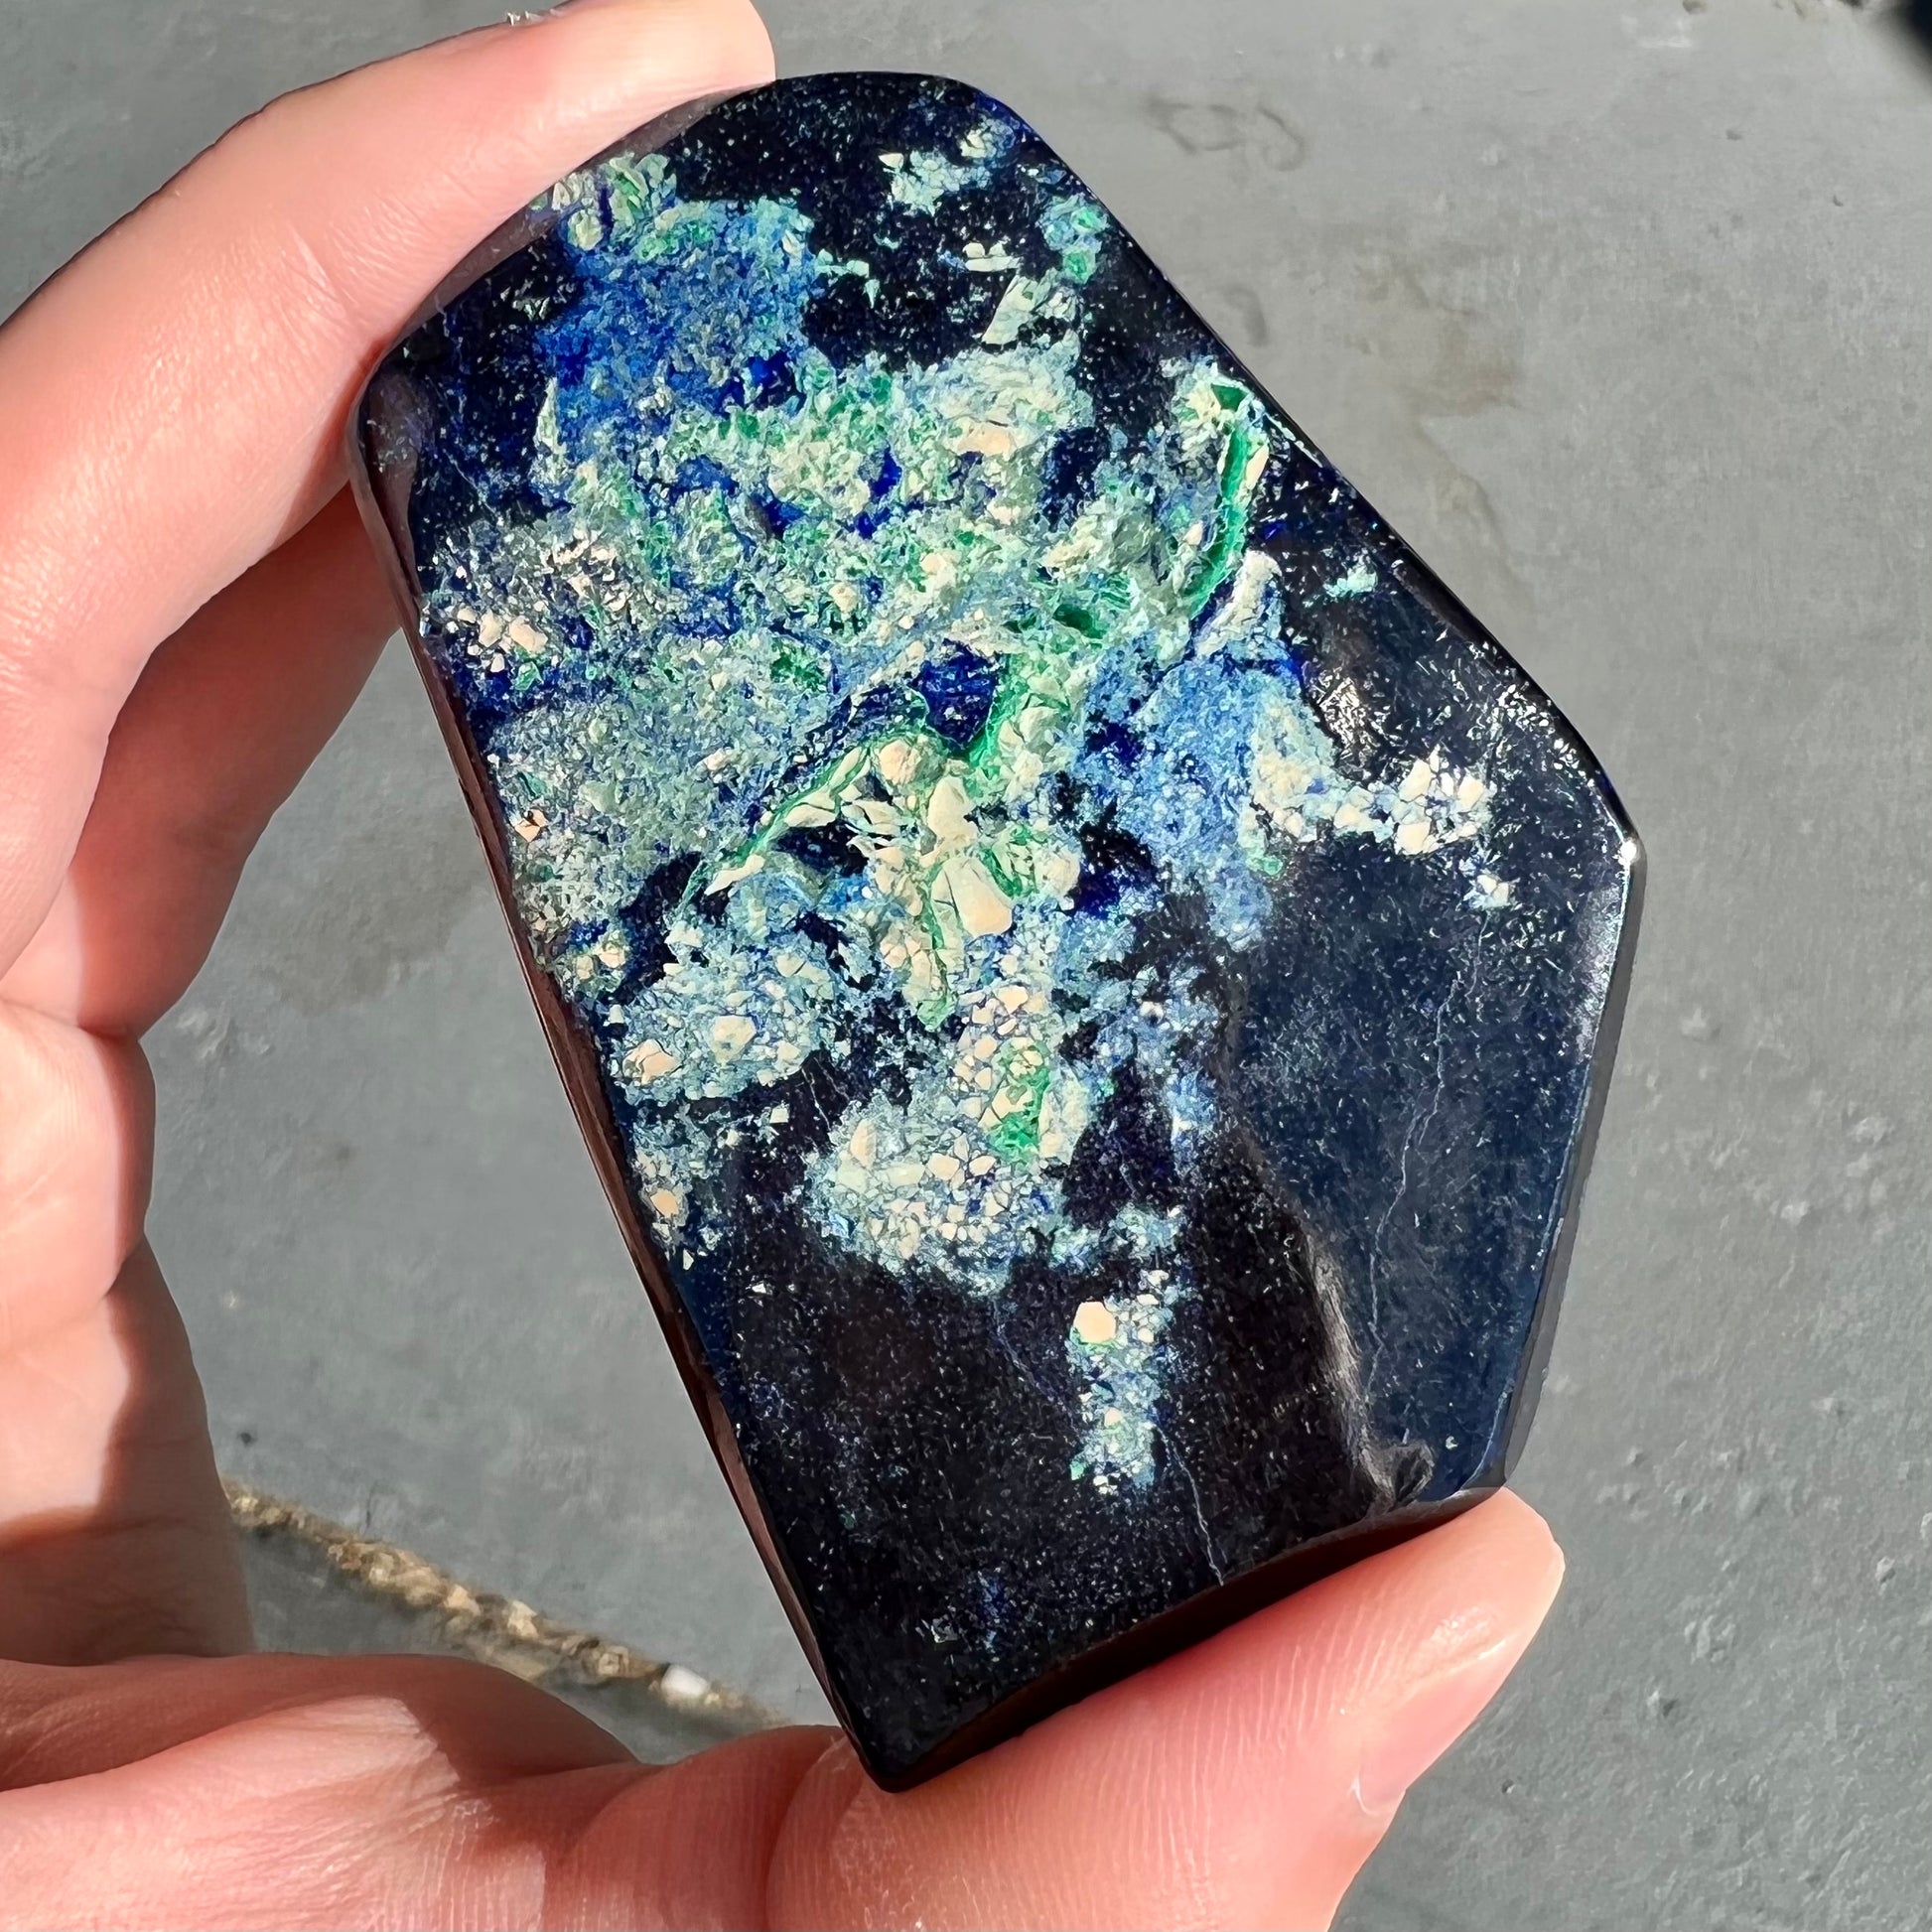 A polished piece of deep royal blue azurite.